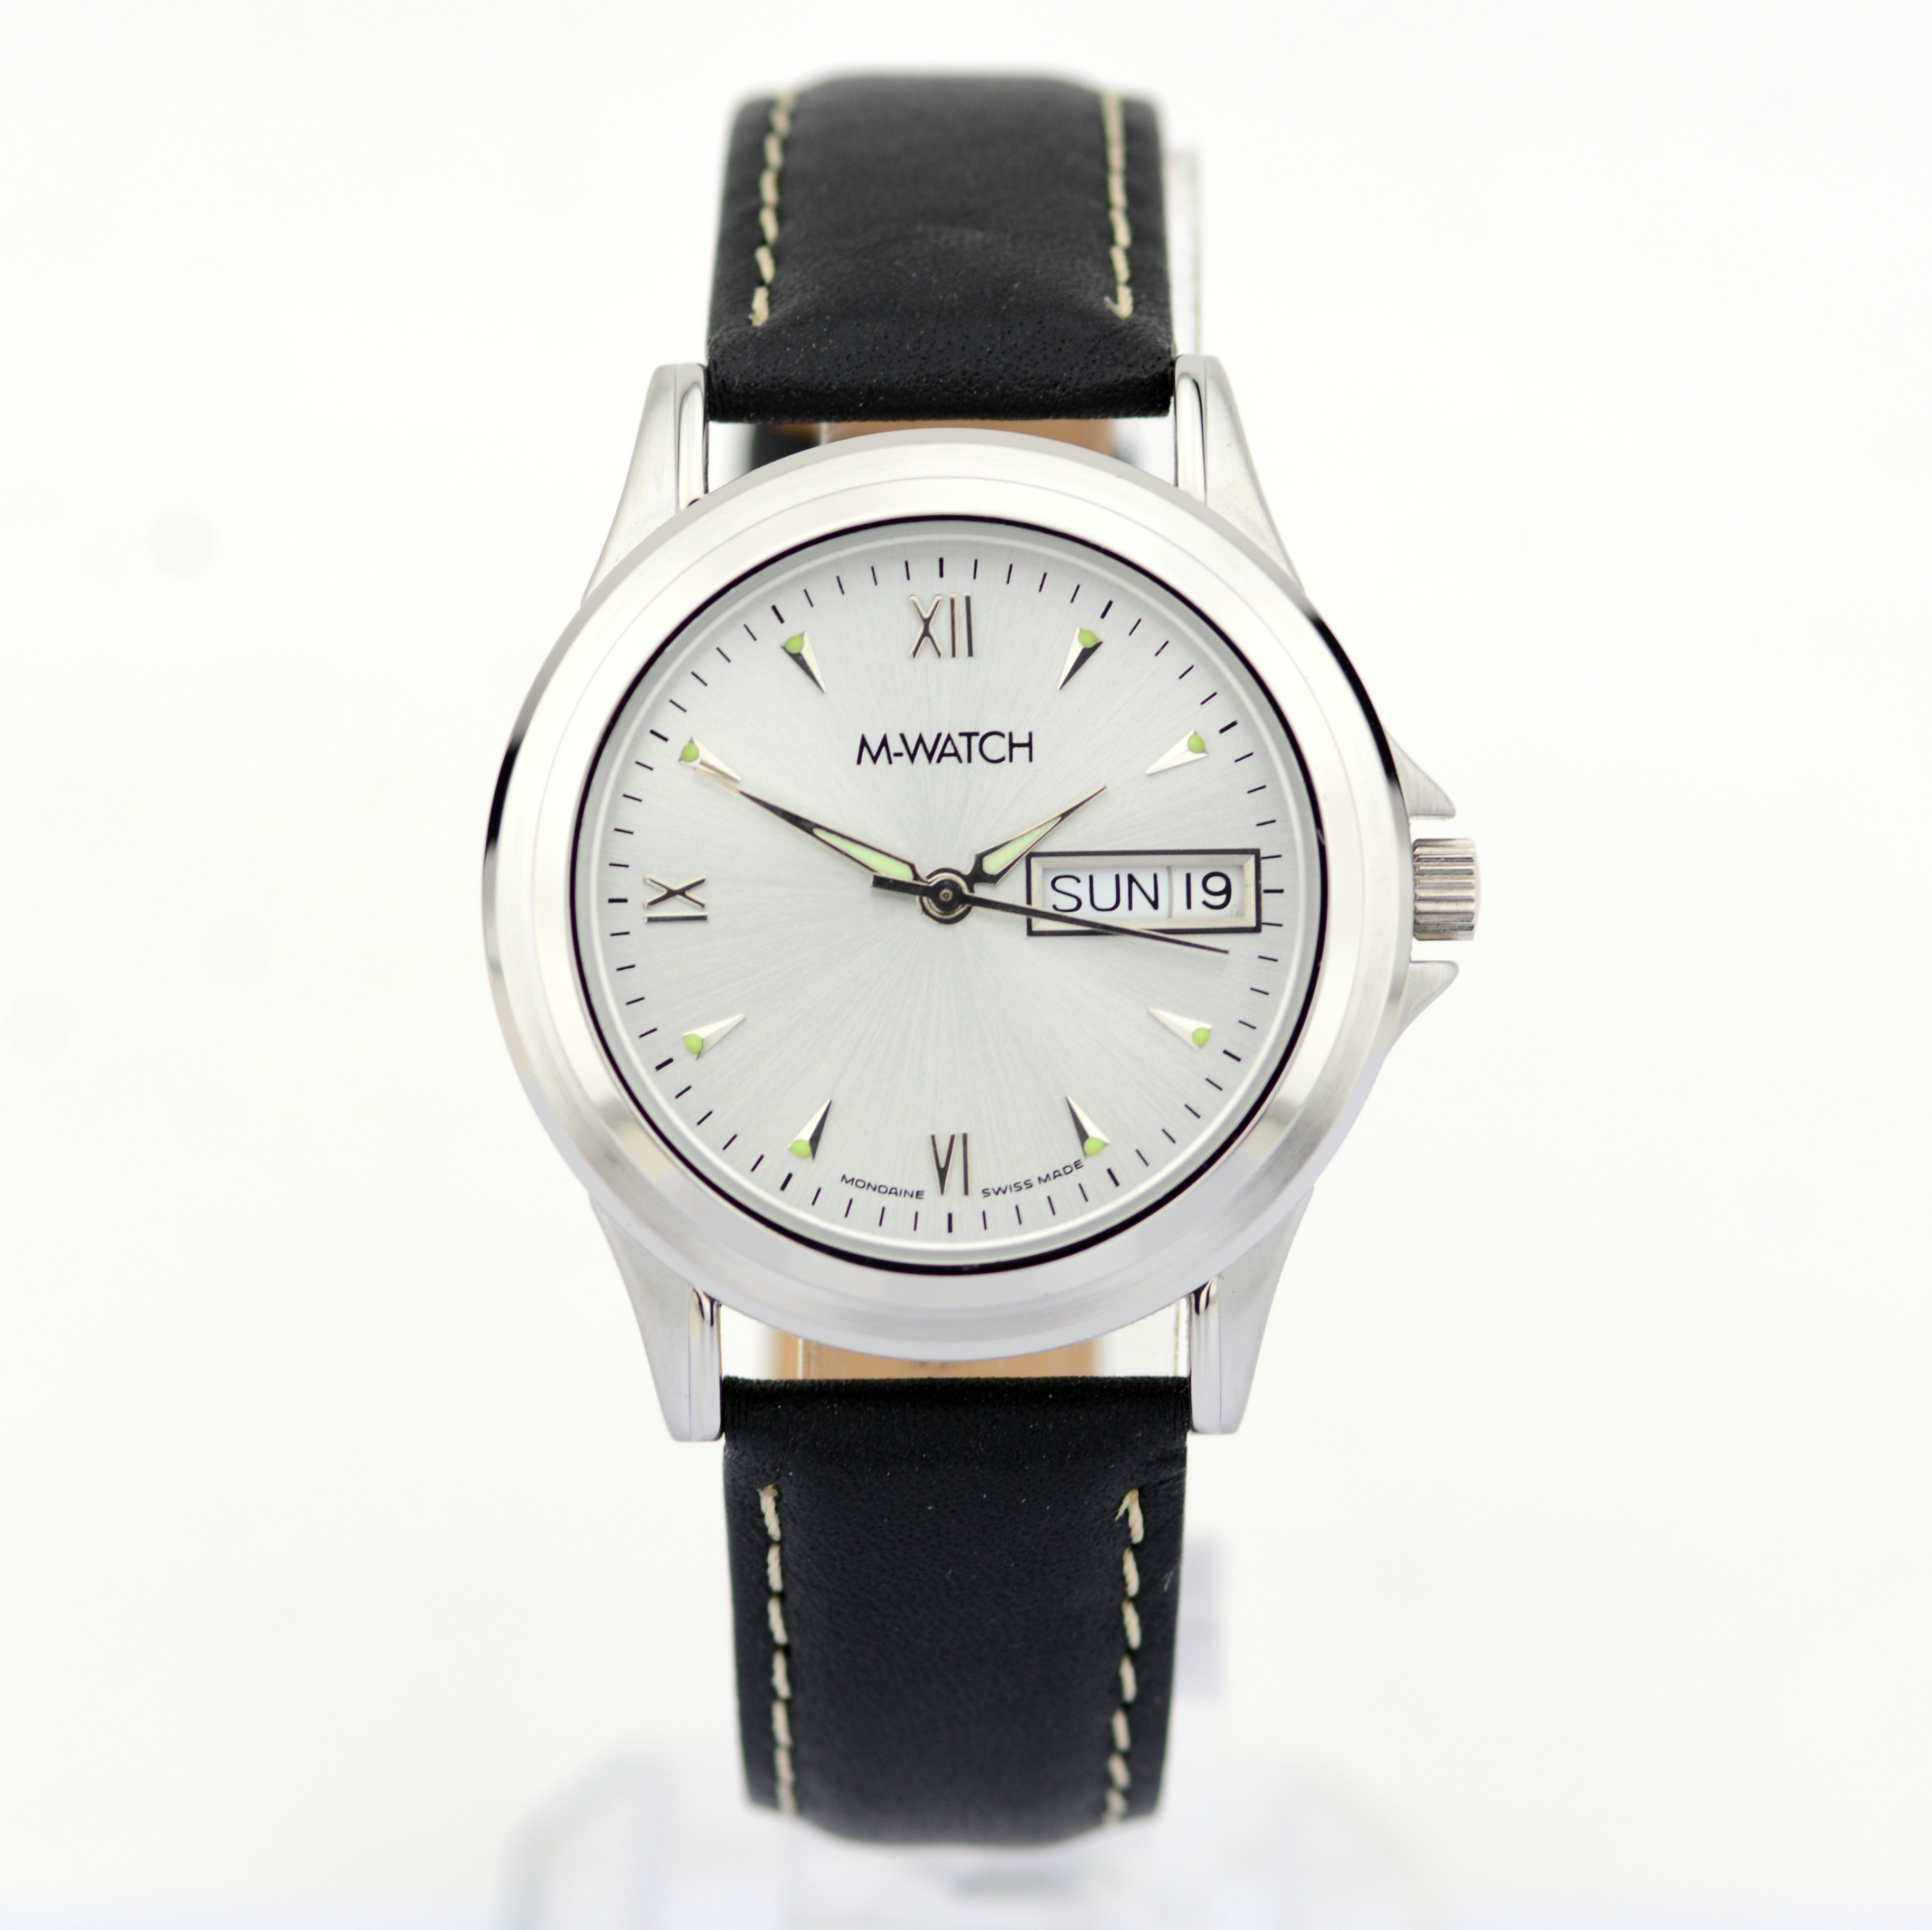 Mondaine / M-Watch Day-Date - (Unworn) Gentlmen's Brass Wrist Watch - Image 4 of 8